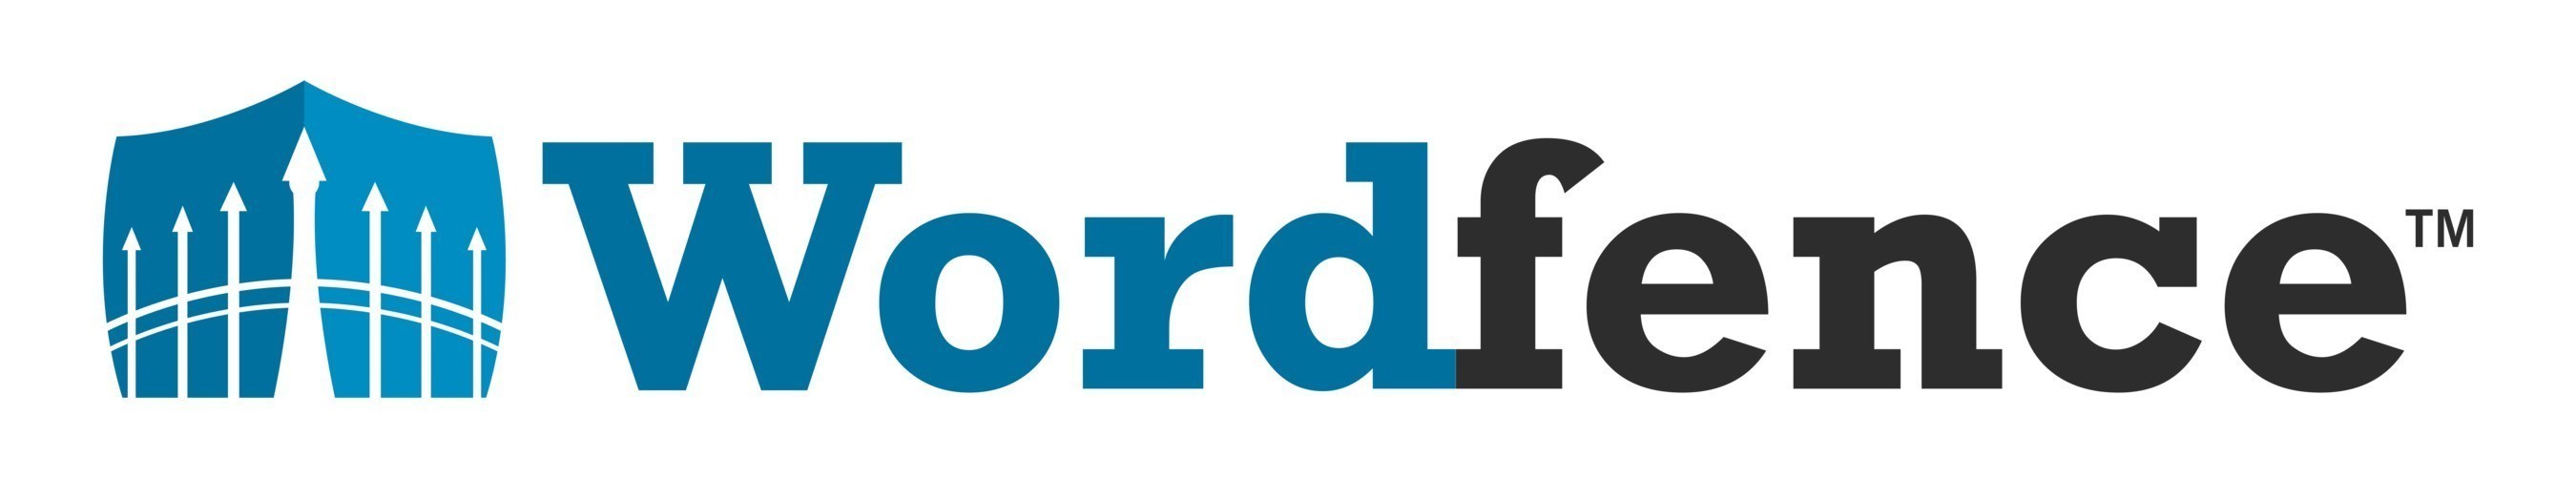 Wordfence logo.